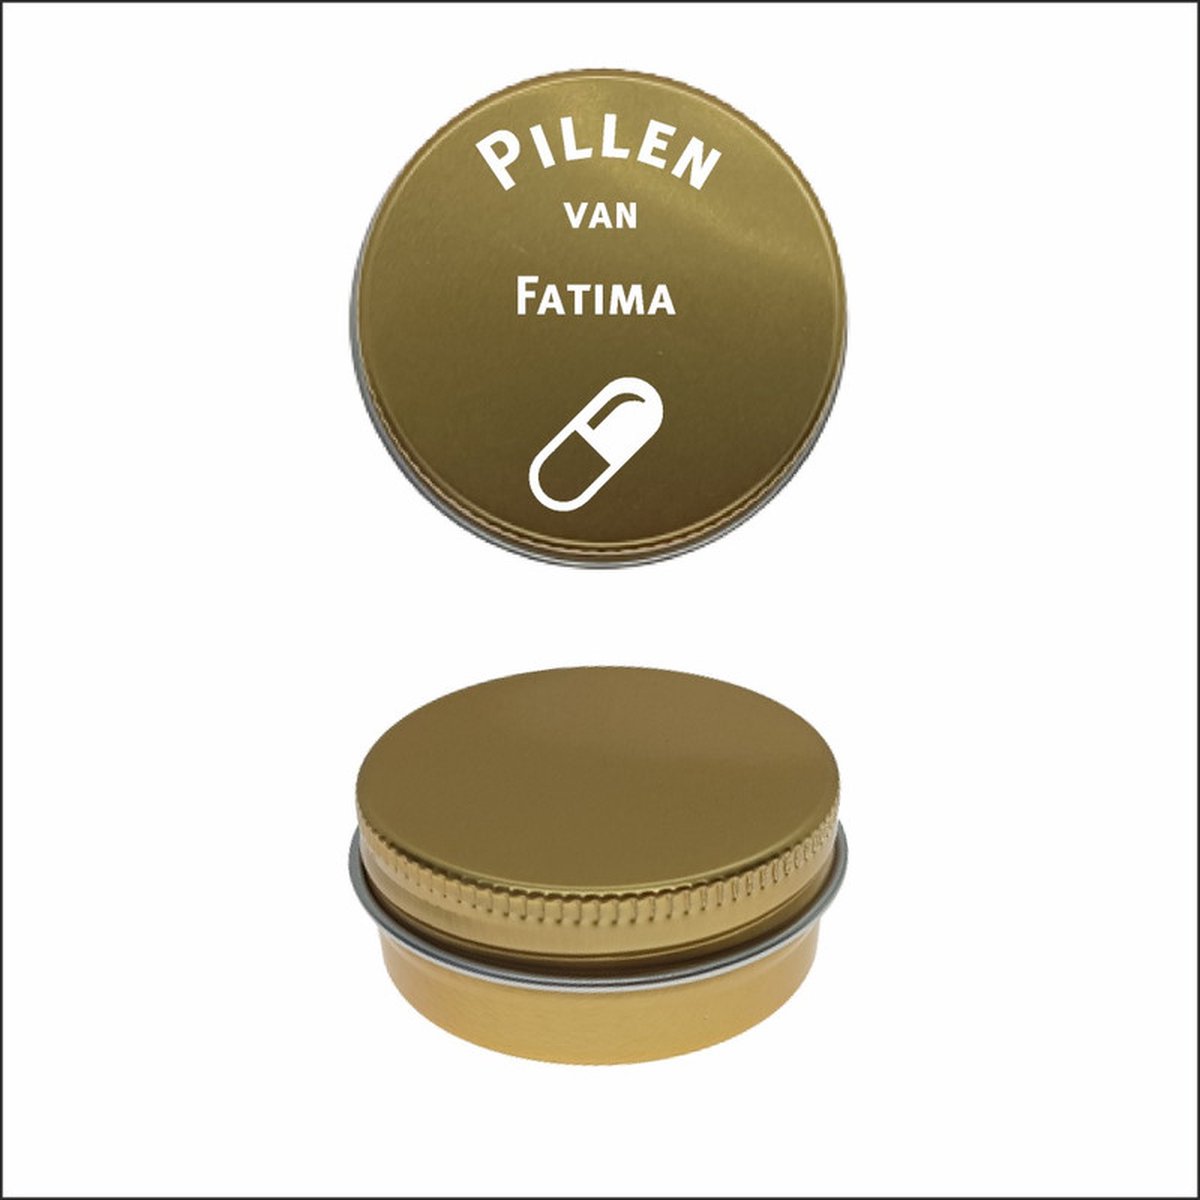 Pillen Blikje Met Naam Gravering - Fatima